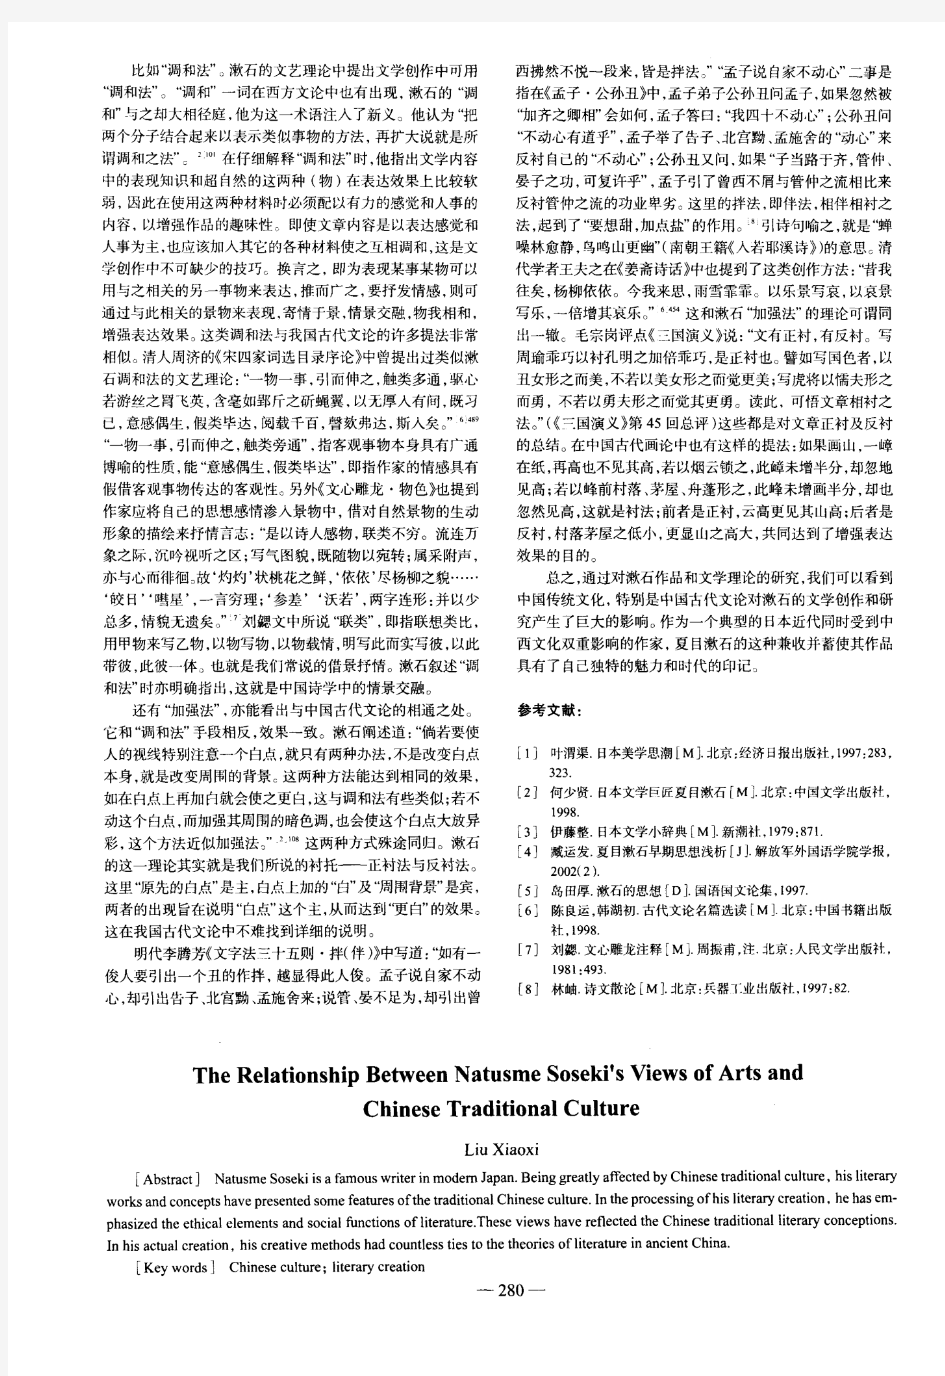 夏目漱石的文艺观与中国传统文化